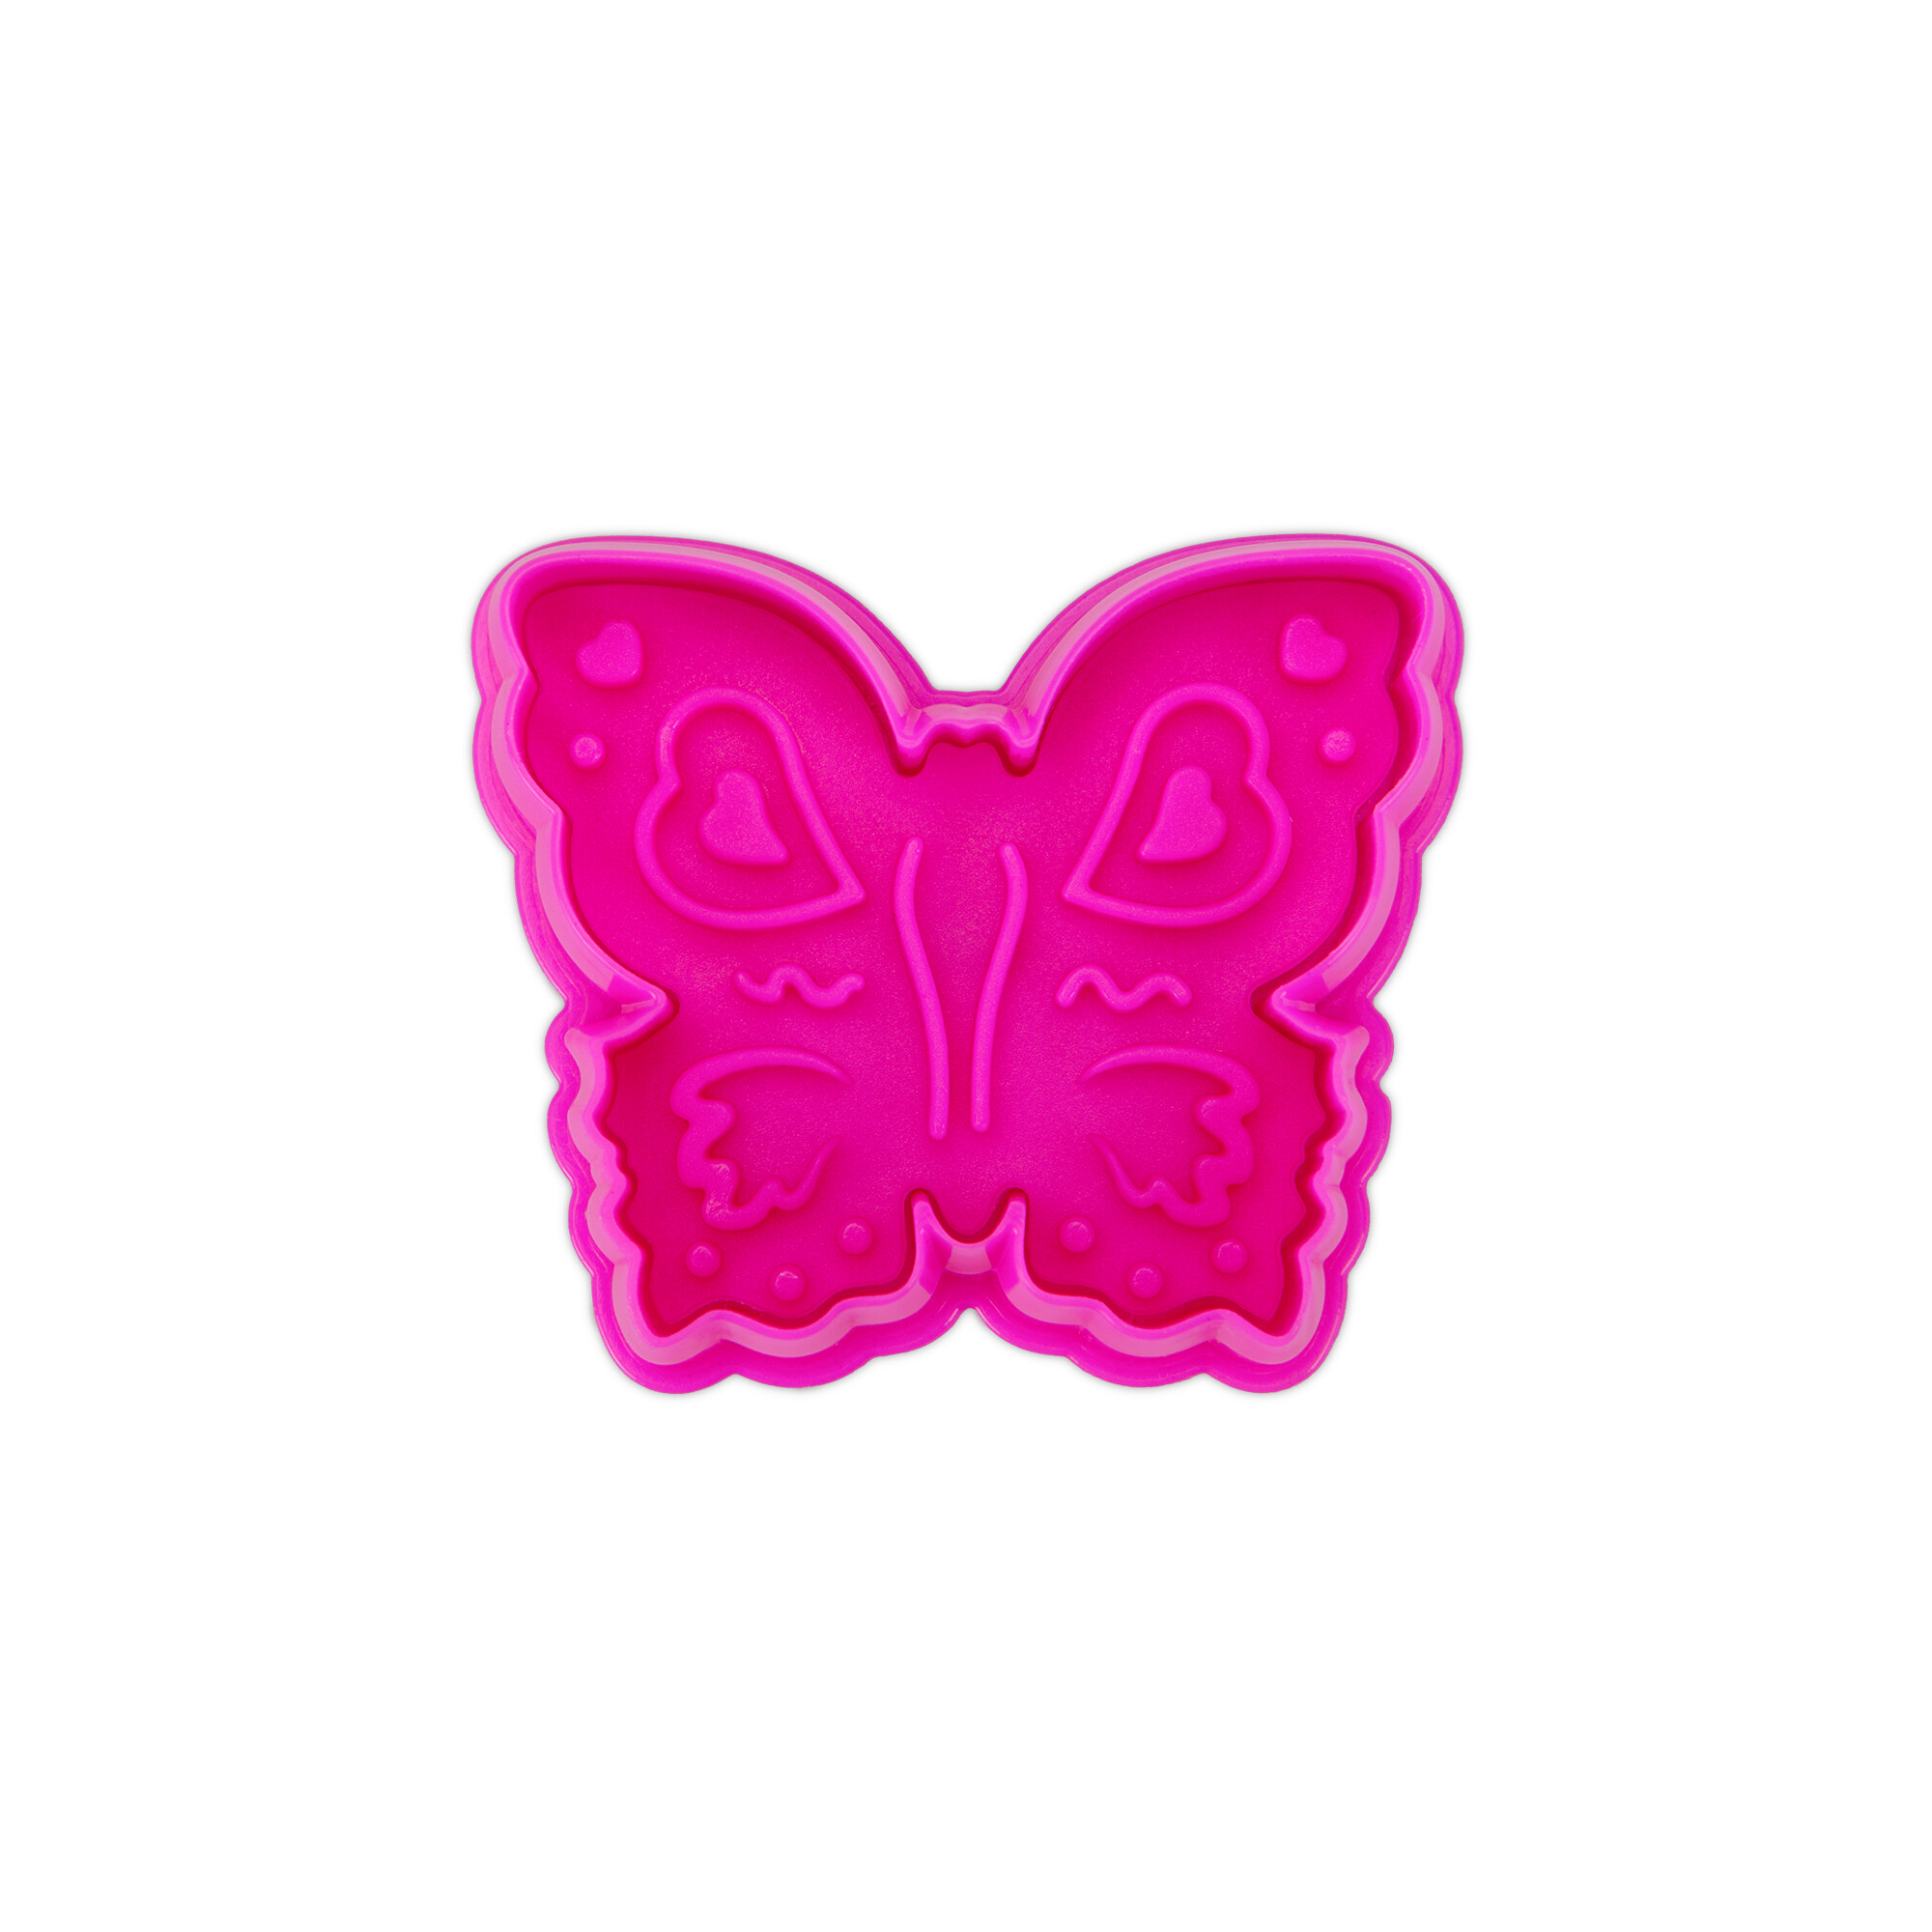 Präge-Ausstecher mit Auswerfer – Schmetterling